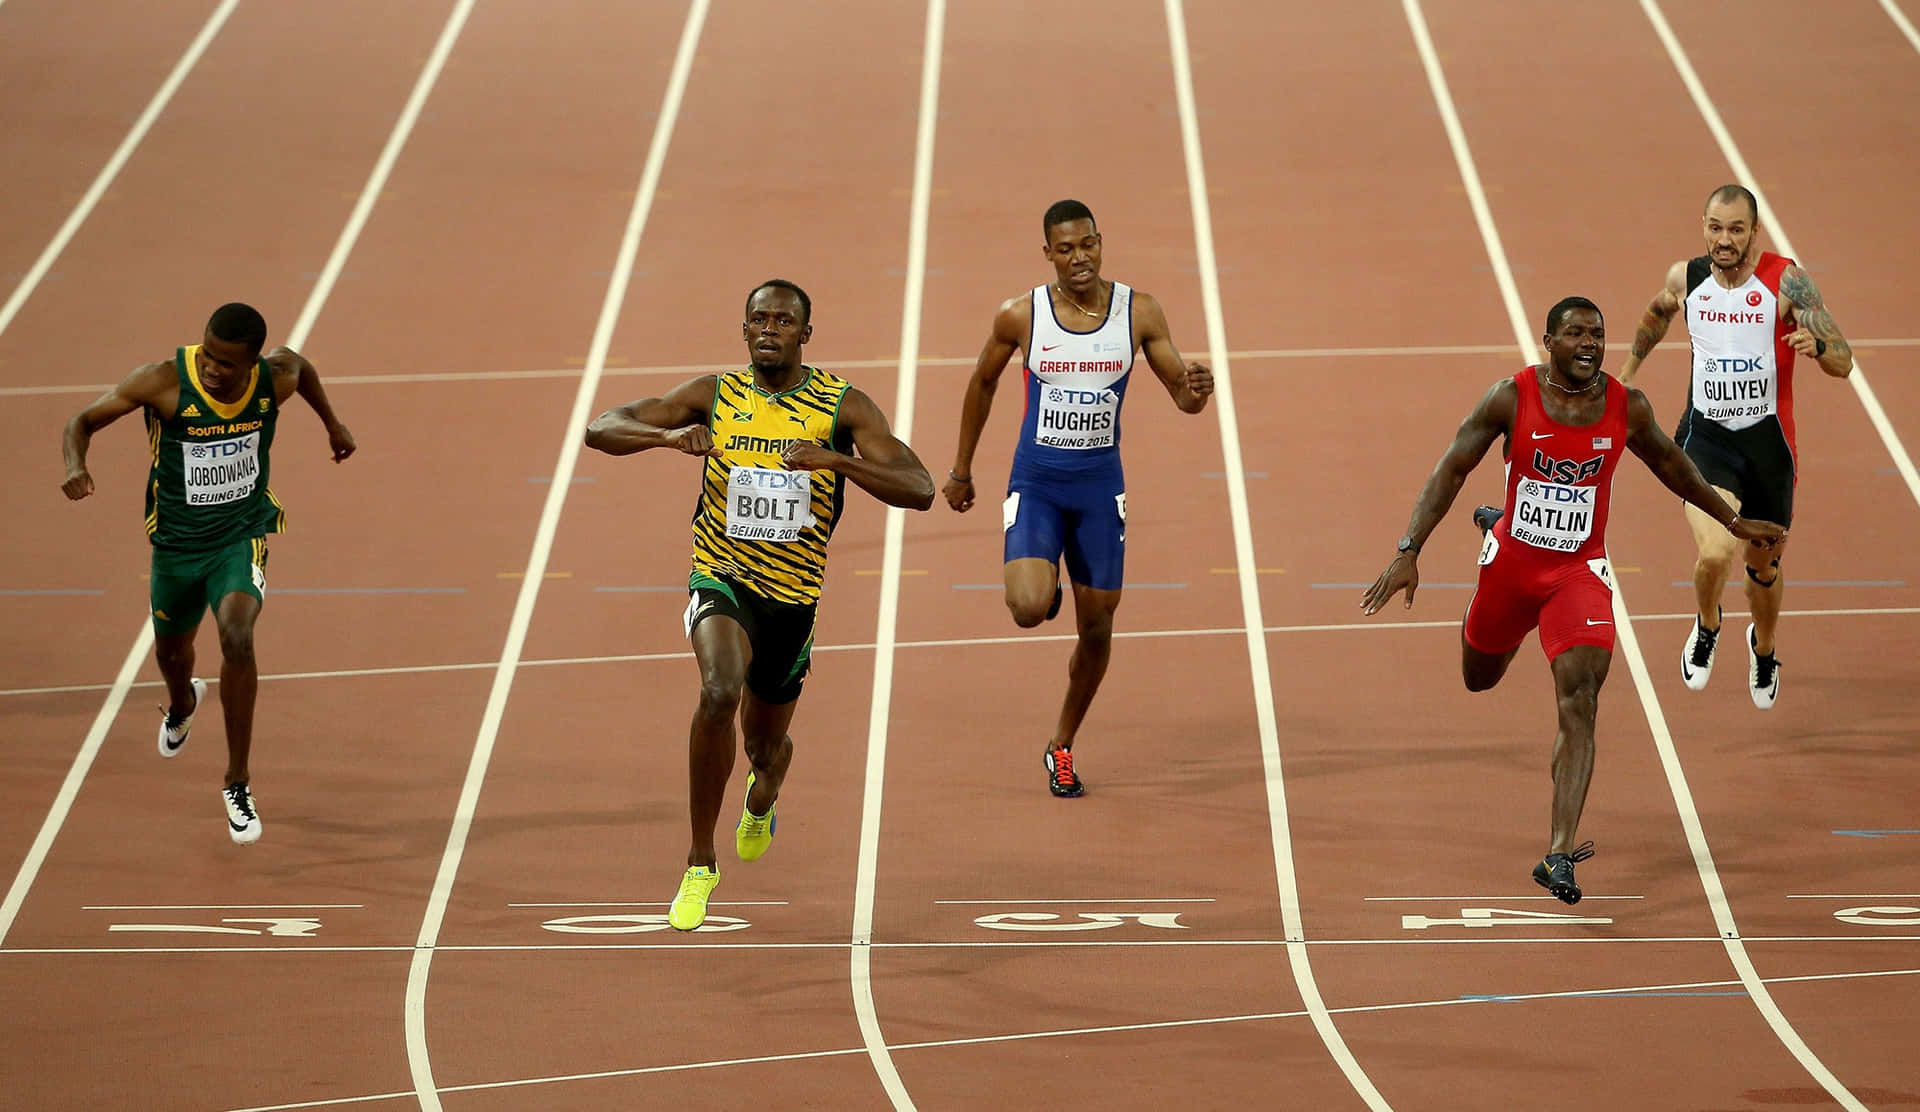 Atletajamaicano Usain Bolt Em Corrida. Papel de Parede